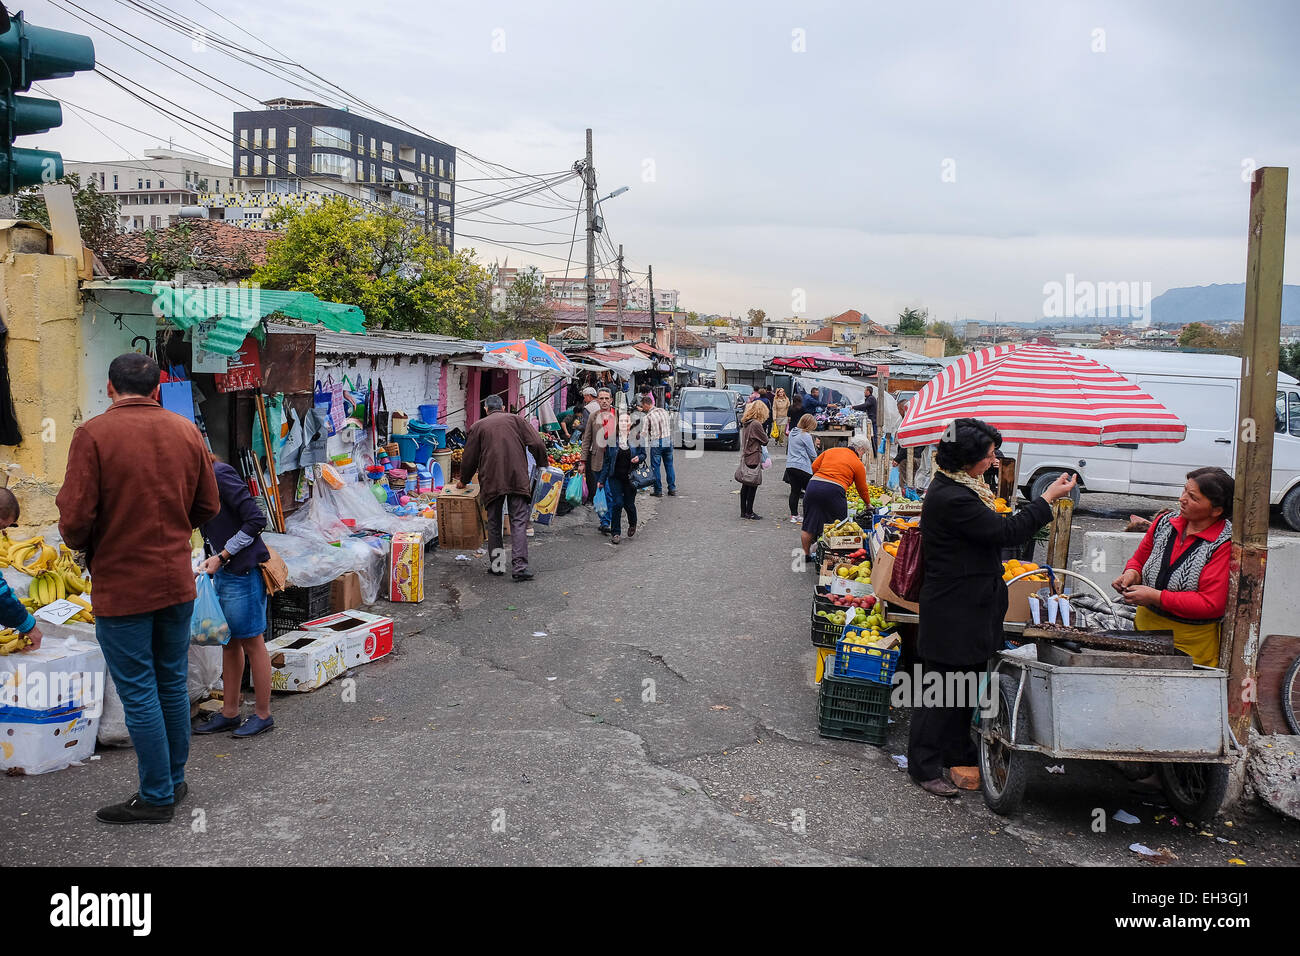 Albania, Tirana, open market Stock Photo